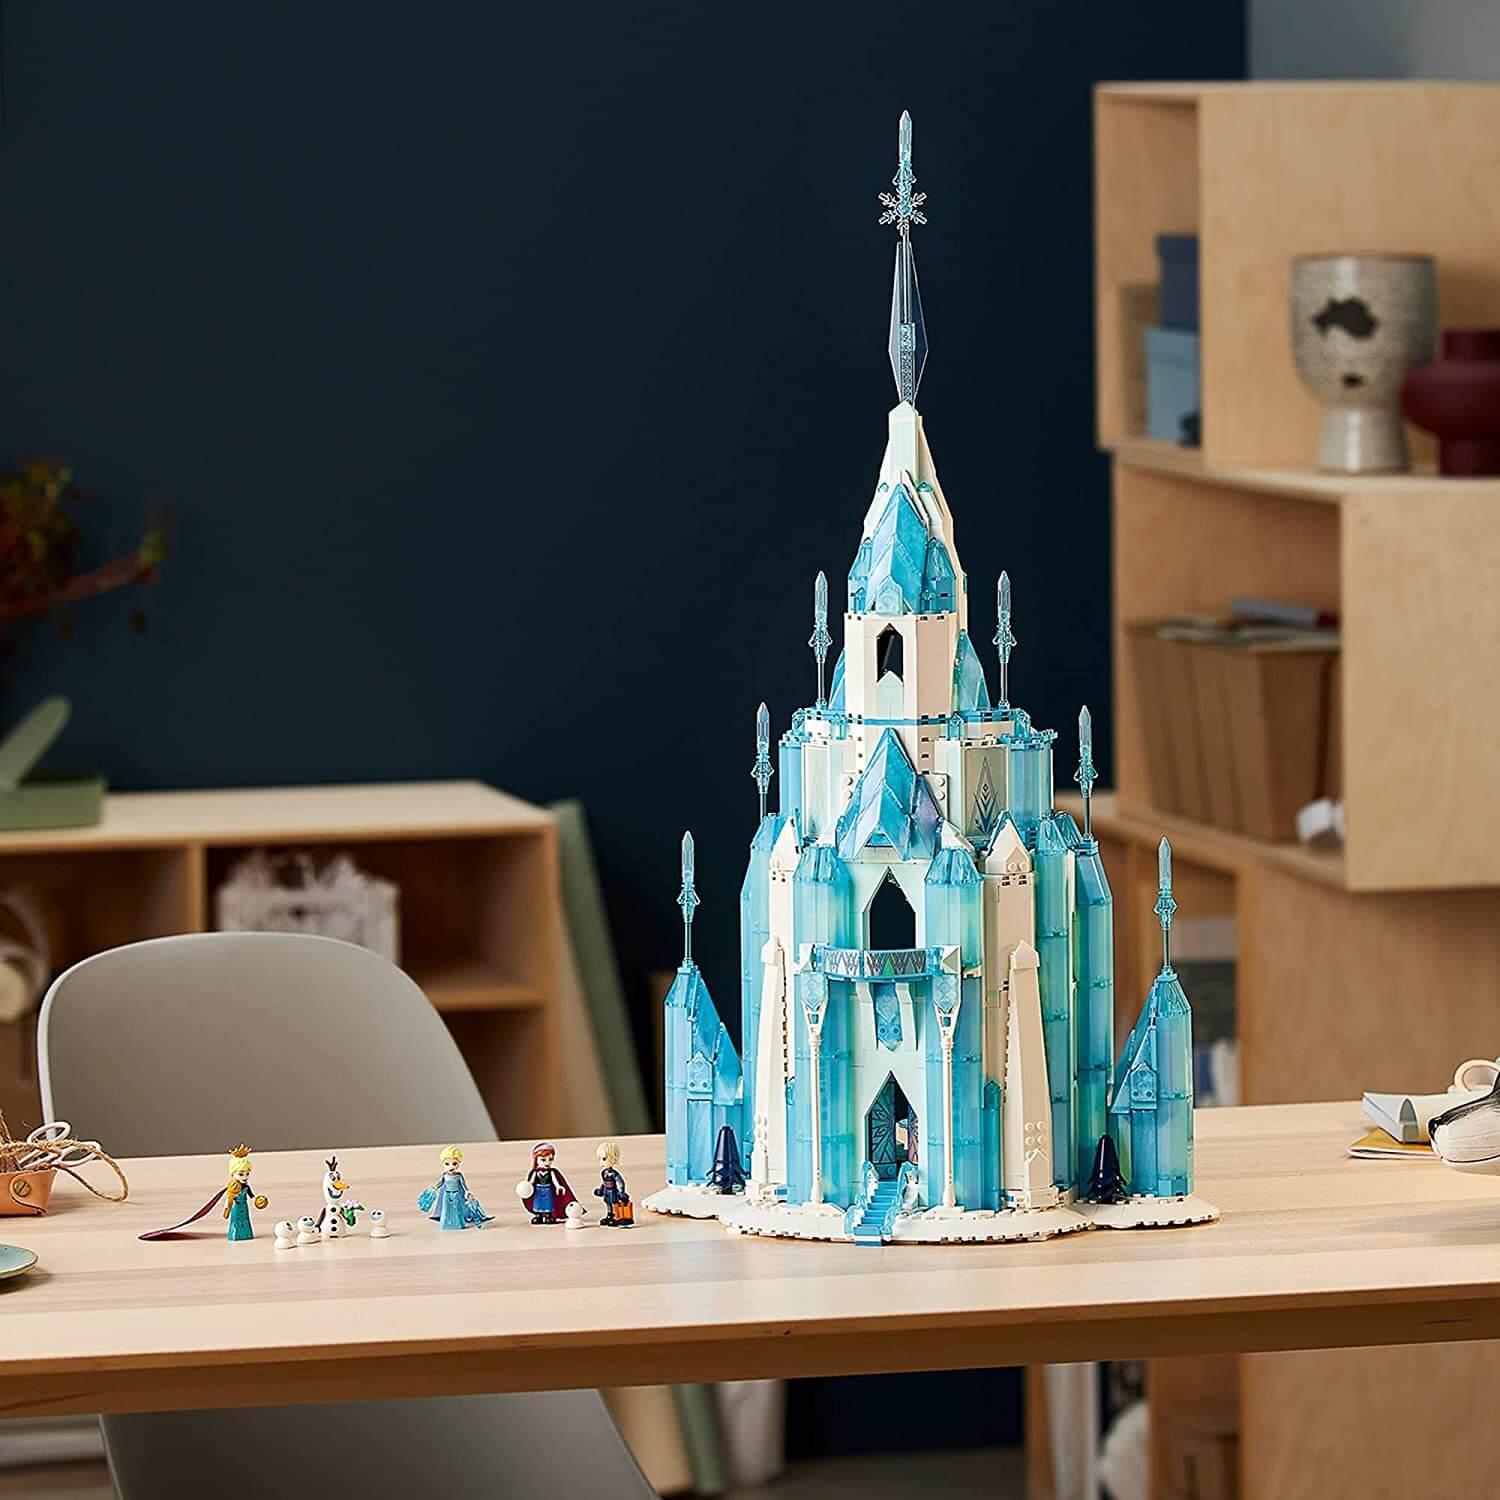 LEGO Disney Princess Ice Castle 1709 Piece Building Set (43197)